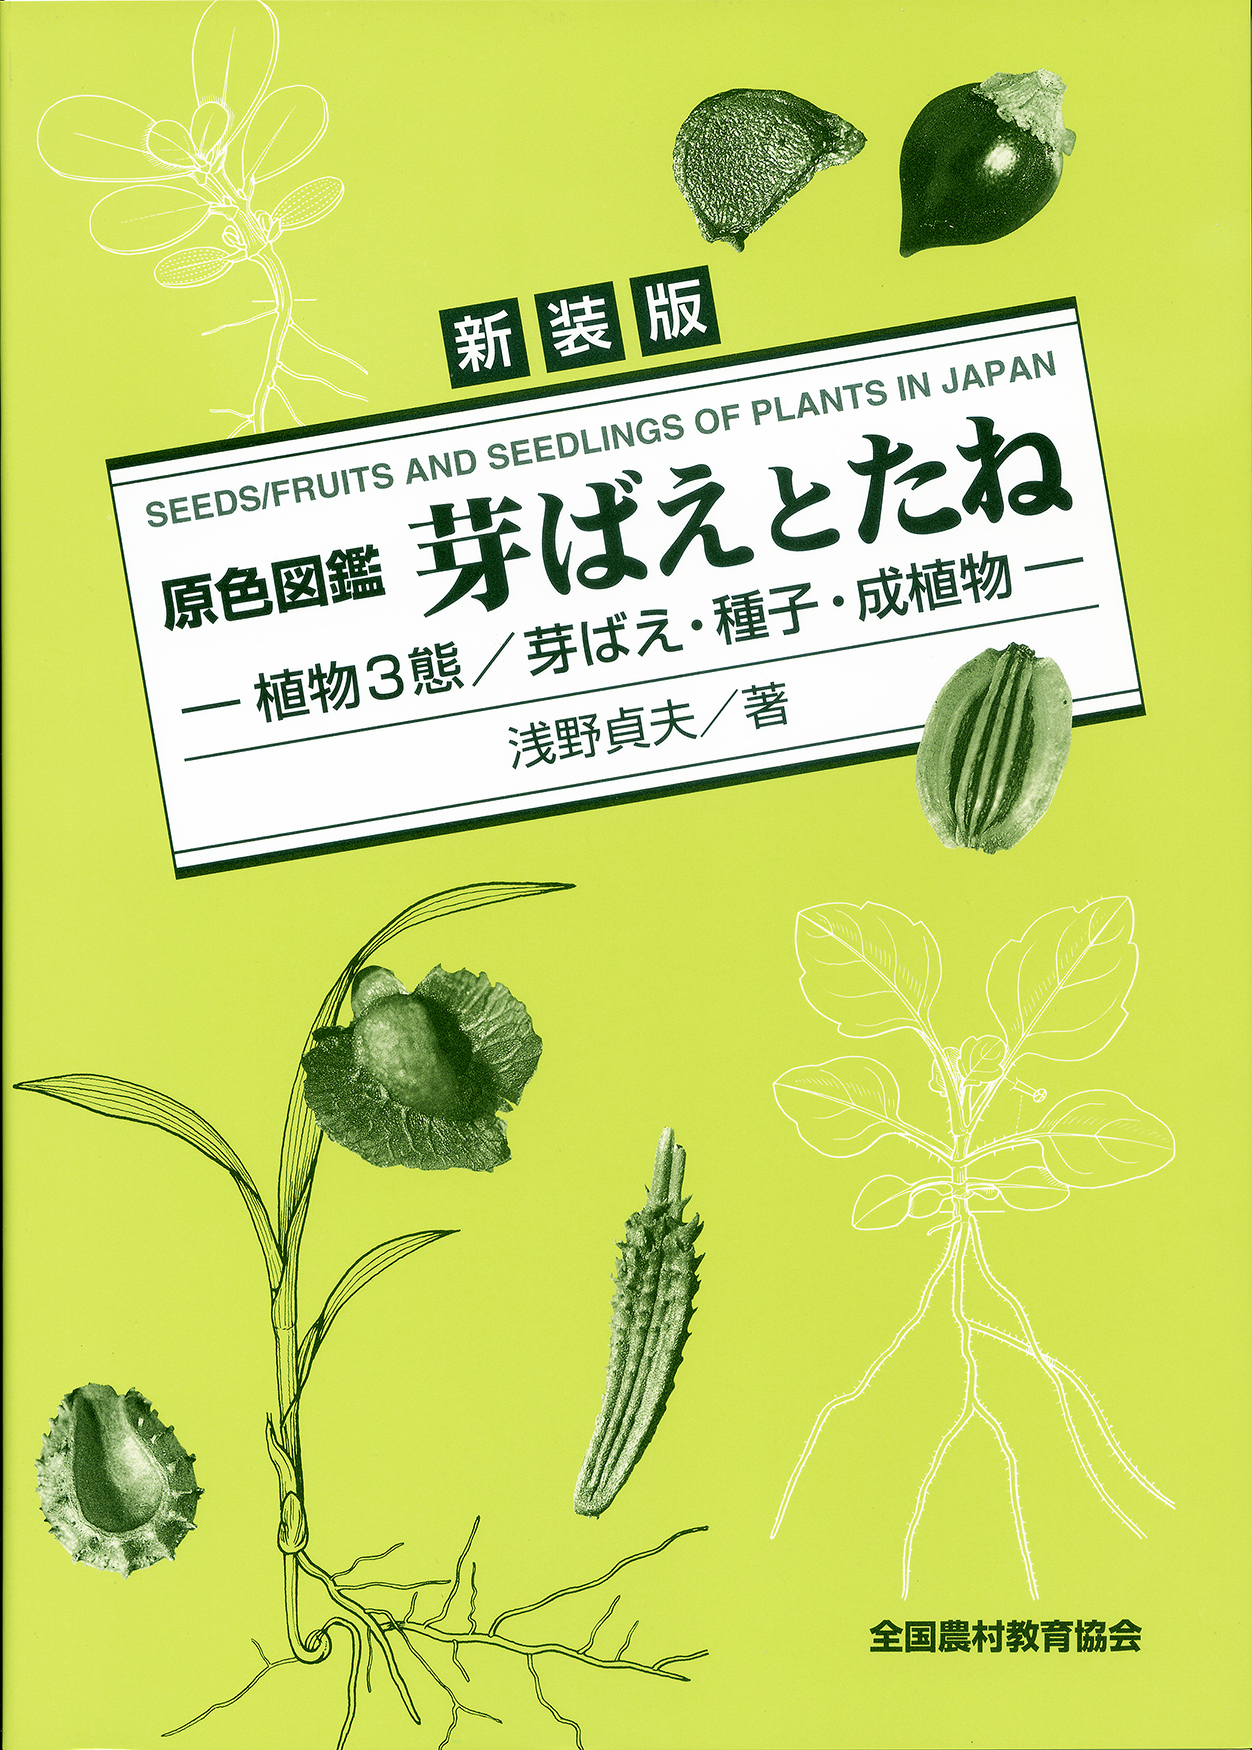 新装版 原色図鑑 芽ばえとたね―植物3態/芽ばえ・種子・成植物― - 全国